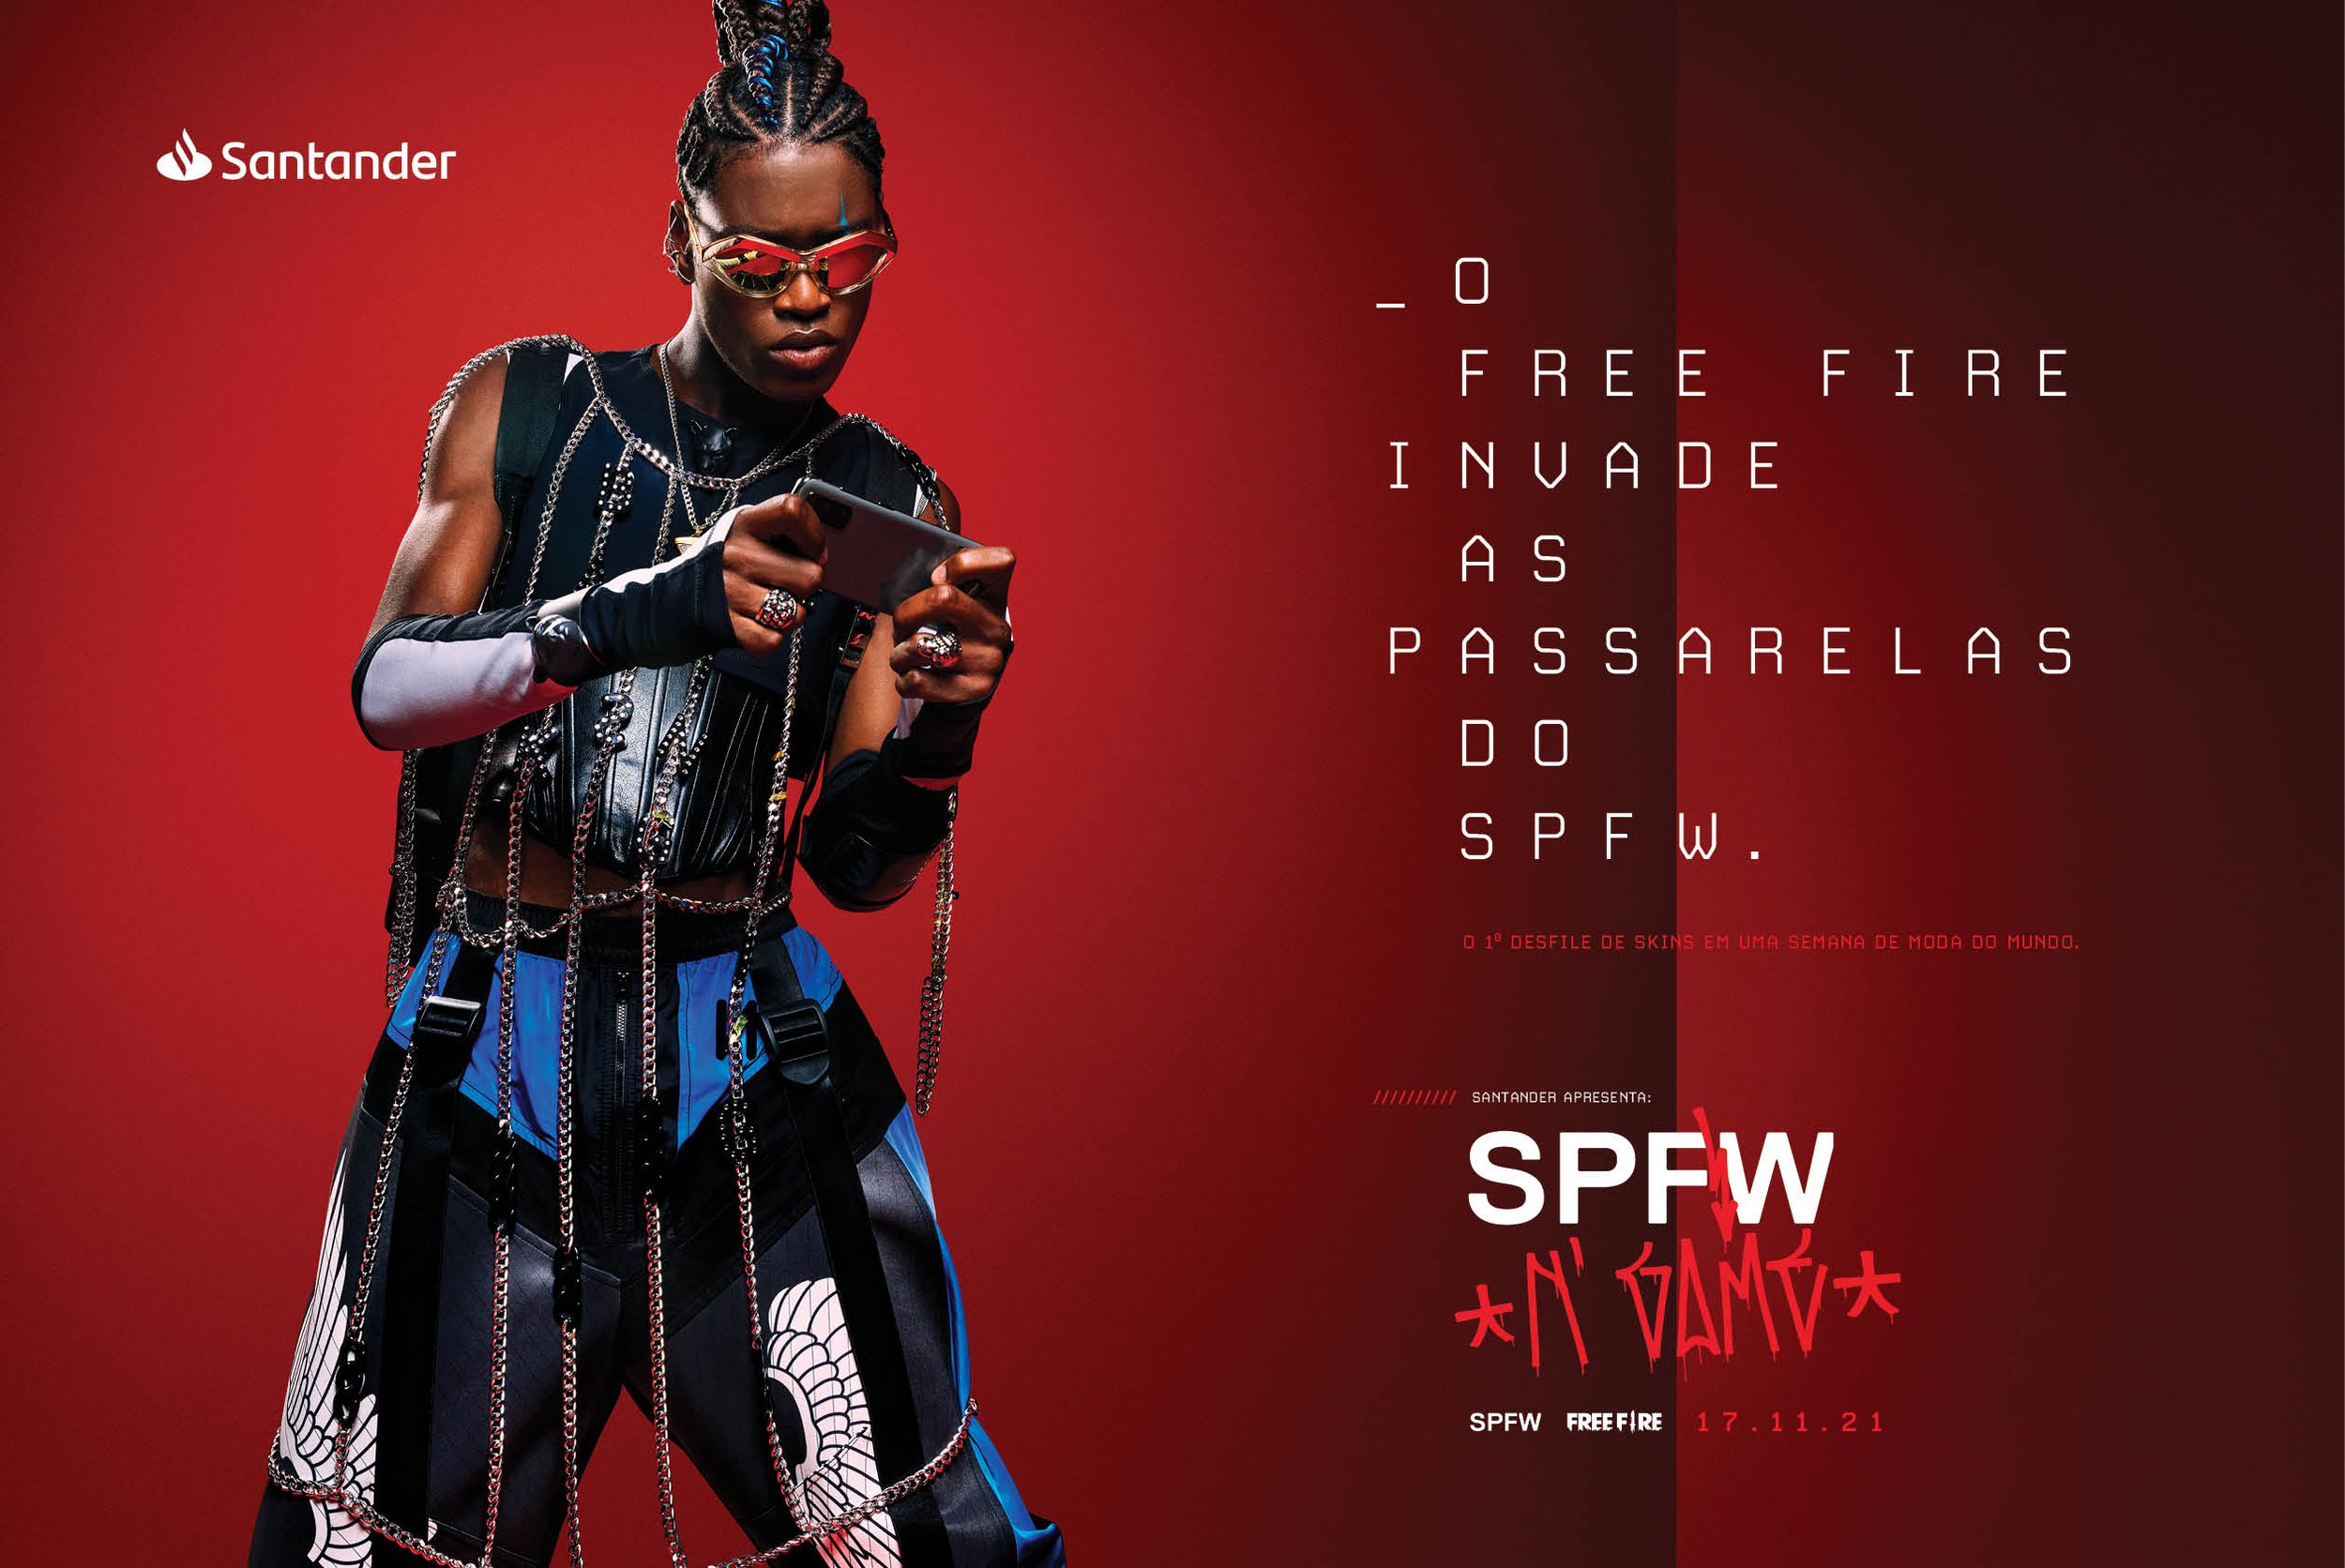 Free Fire + SPFW: o primeiro desfile de skins em semana de moda do mundo